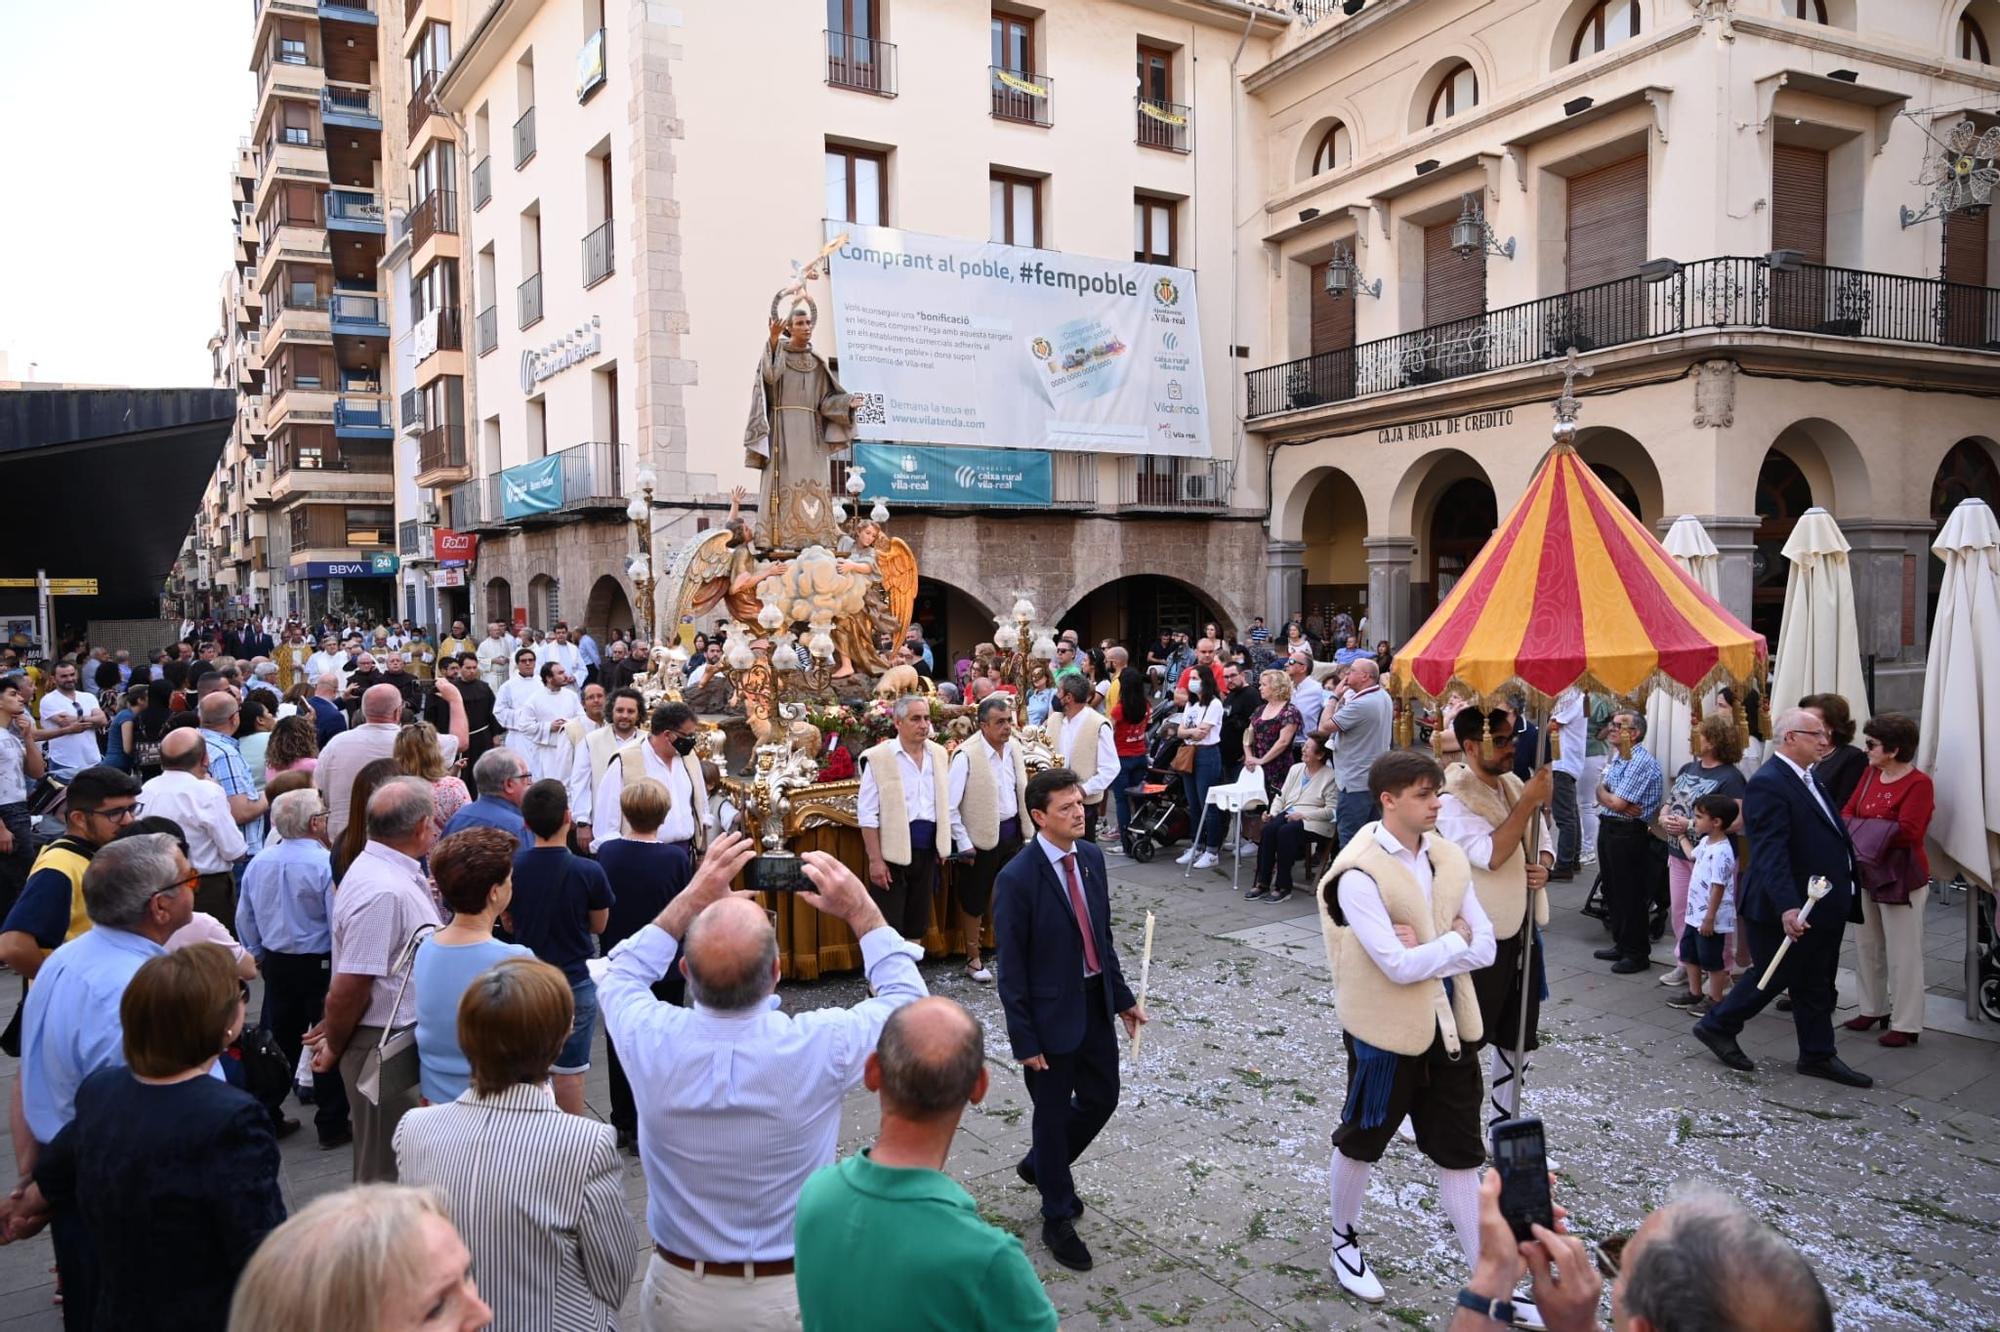 Las imágenes de la misa y la procesión del día de Sant Pasqual en Vila-real